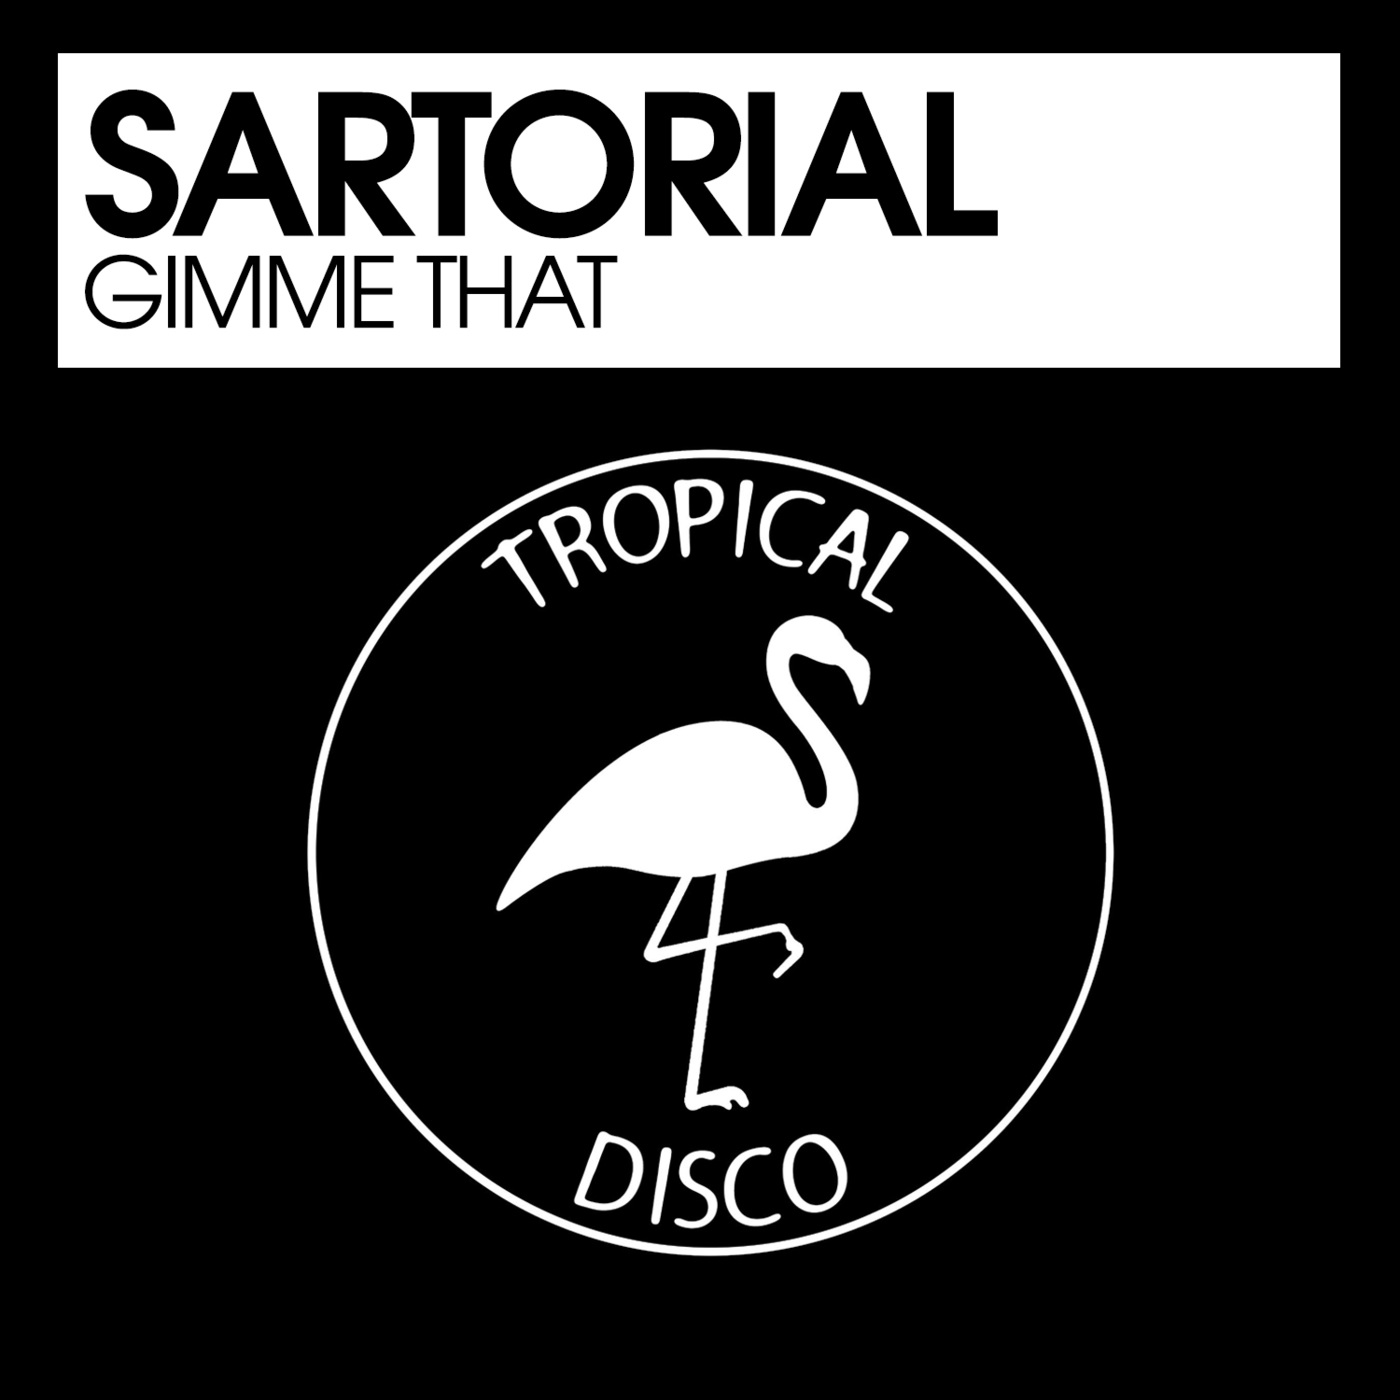 Sartorial - Gimme That / Tropical Disco Records